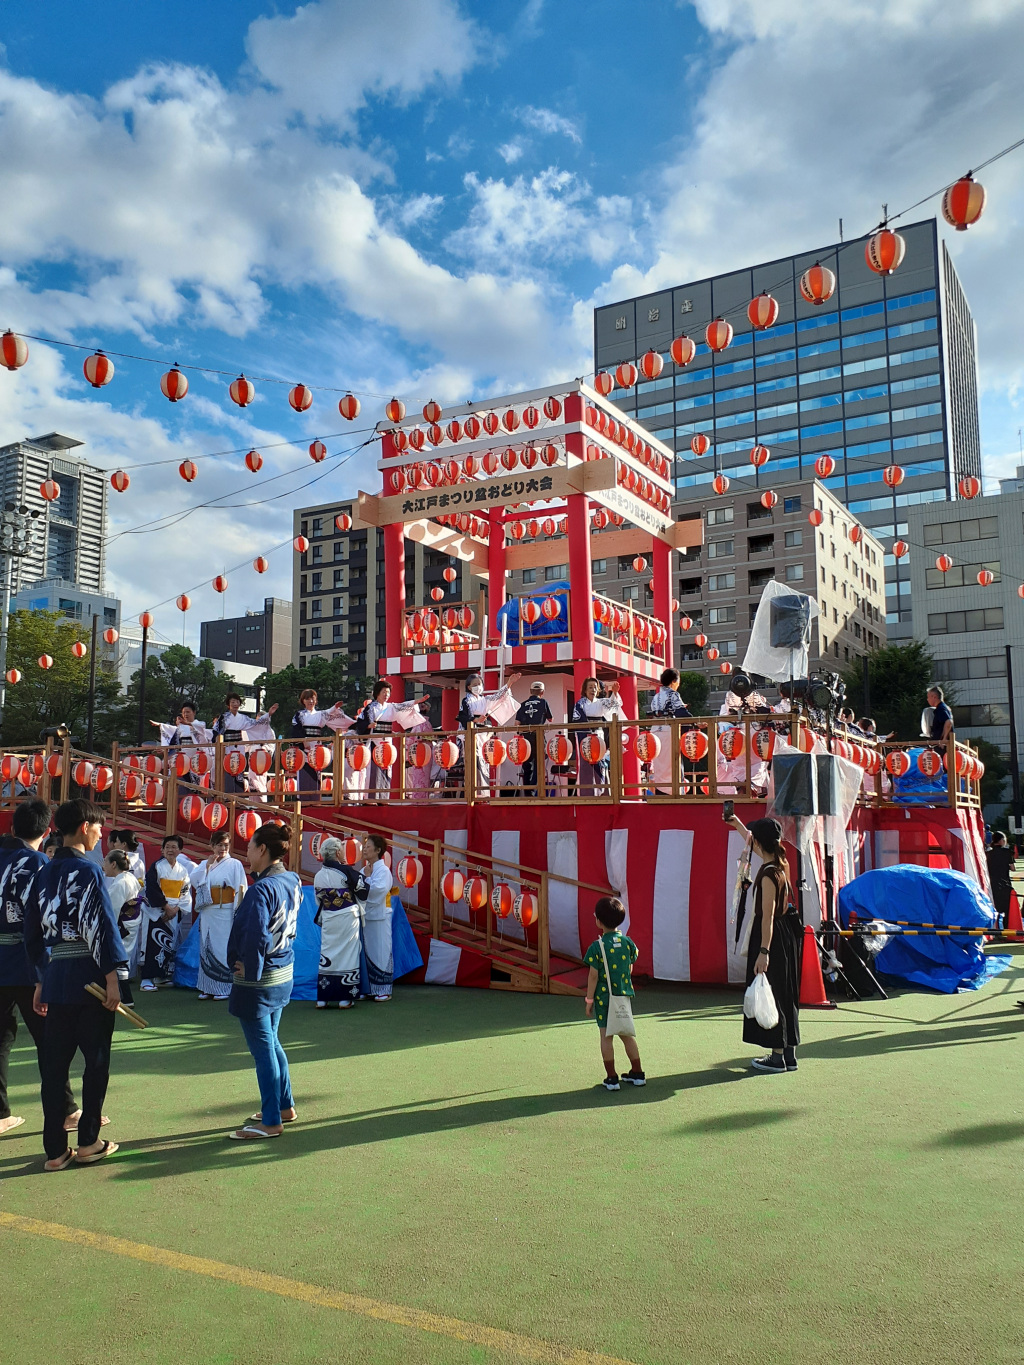 Oedo Bon-dance Festival was held